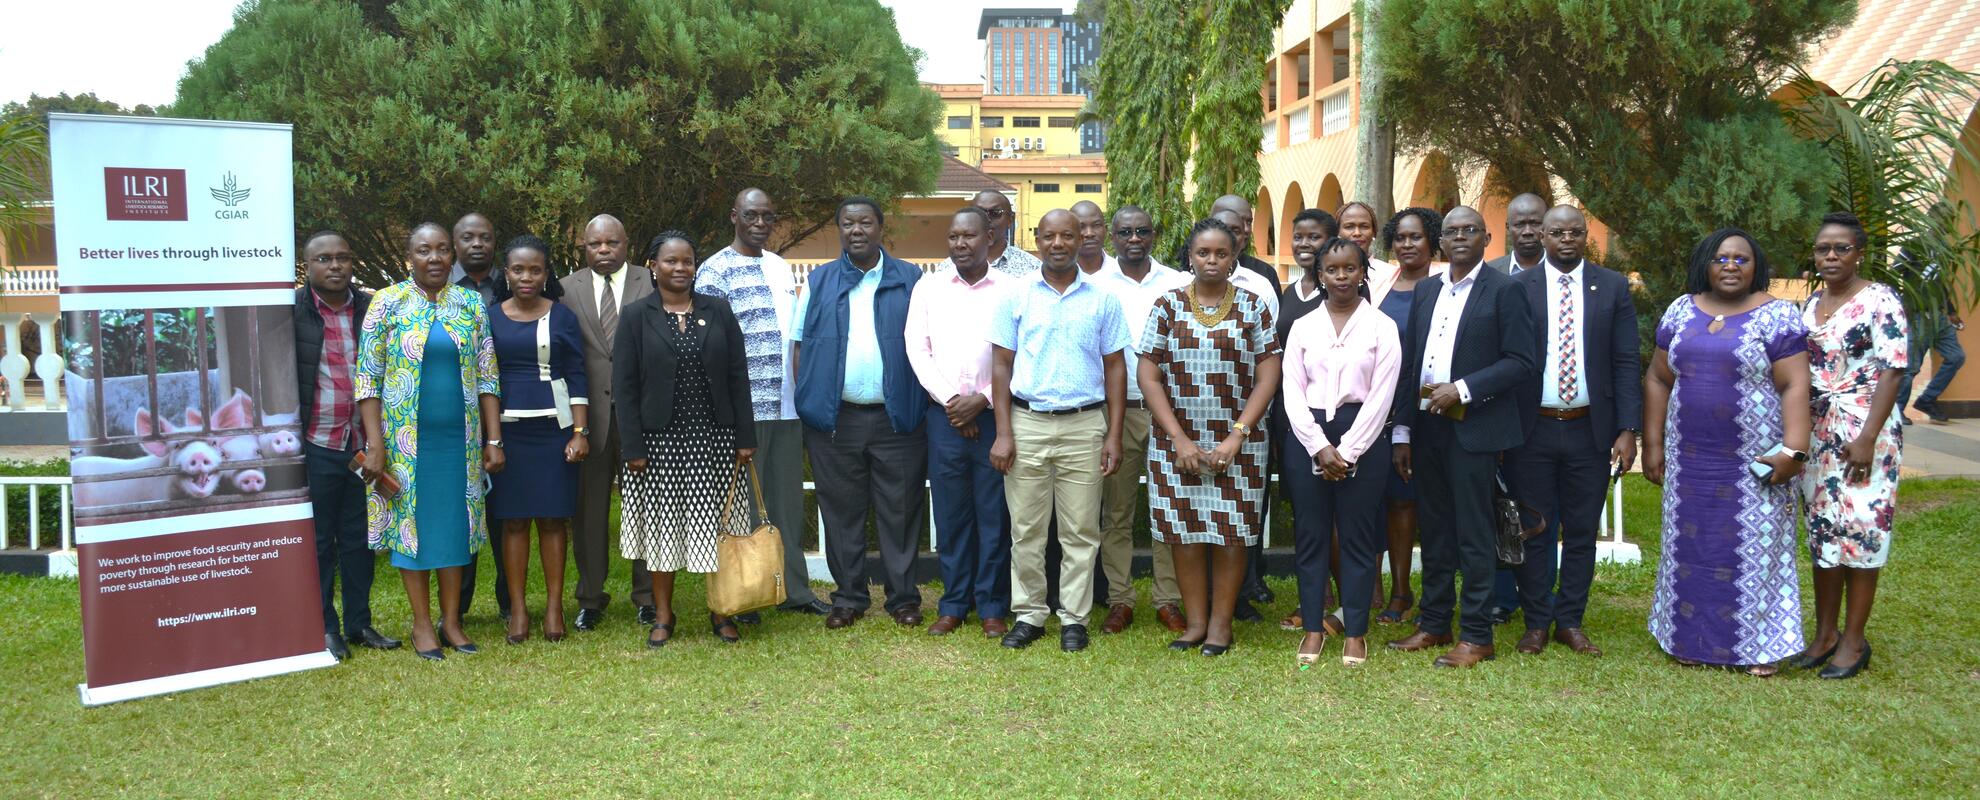 Uganda Research Regulators Forum